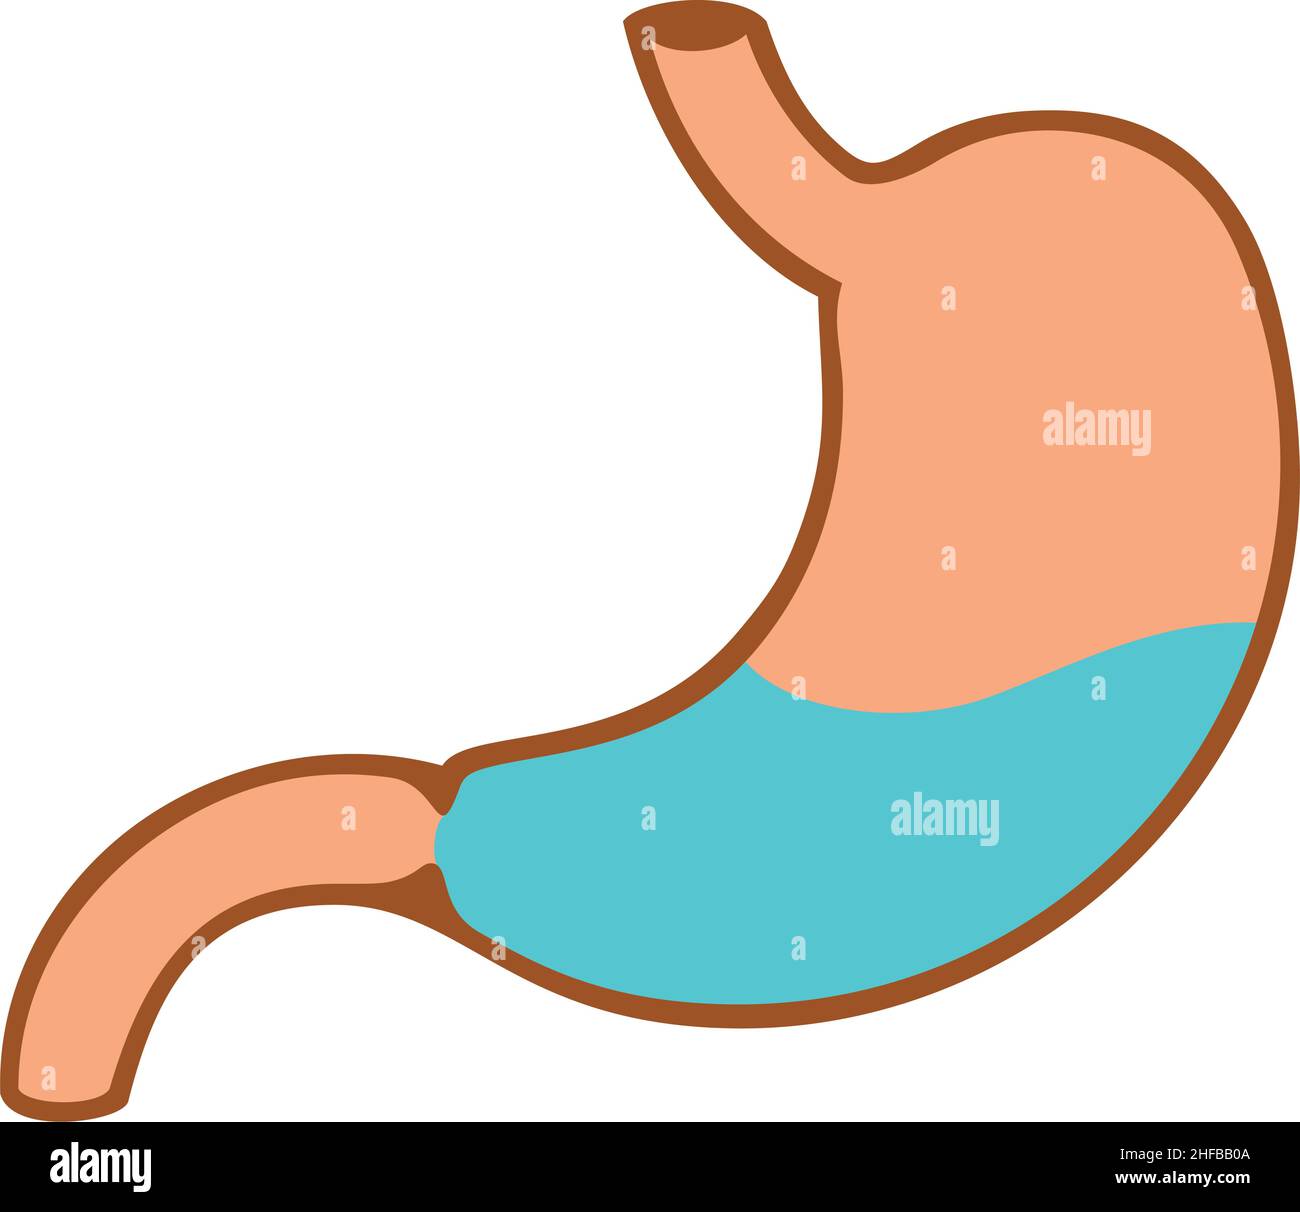 Illustrazione vettoriale dell'anatomia interna dello stomaco umano Illustrazione Vettoriale